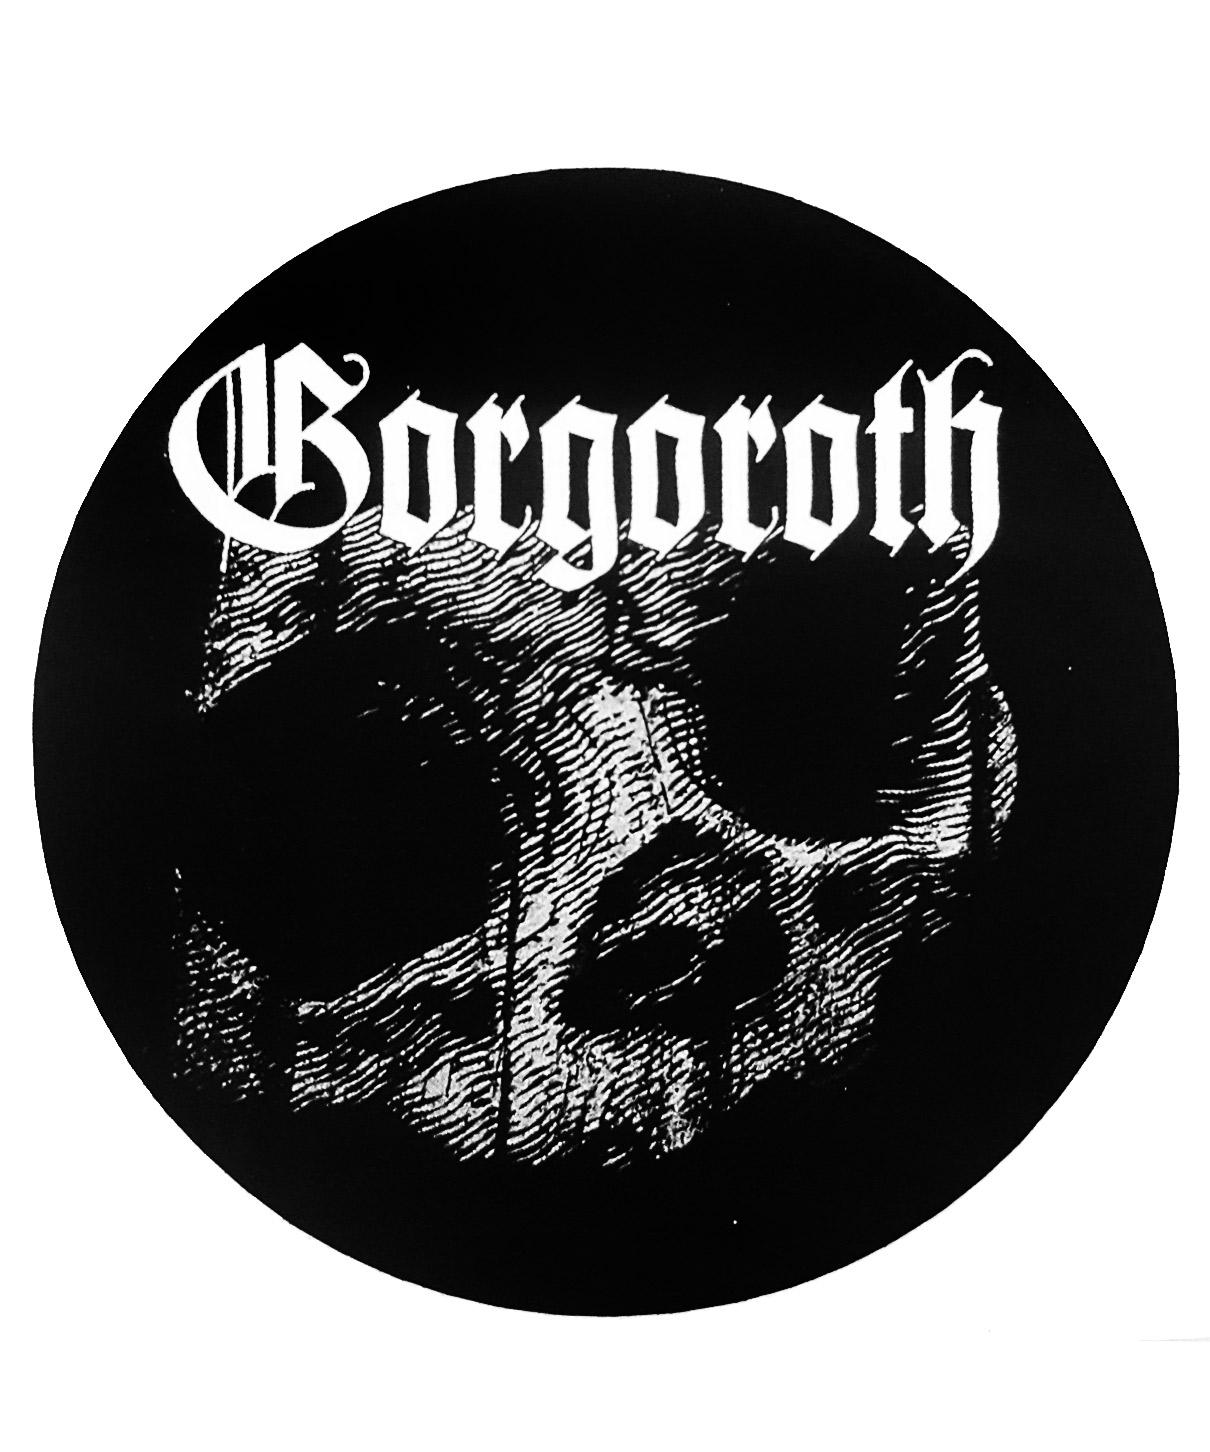 Наклейка-стикер Gorgoroth - фото 1 - rockbunker.ru